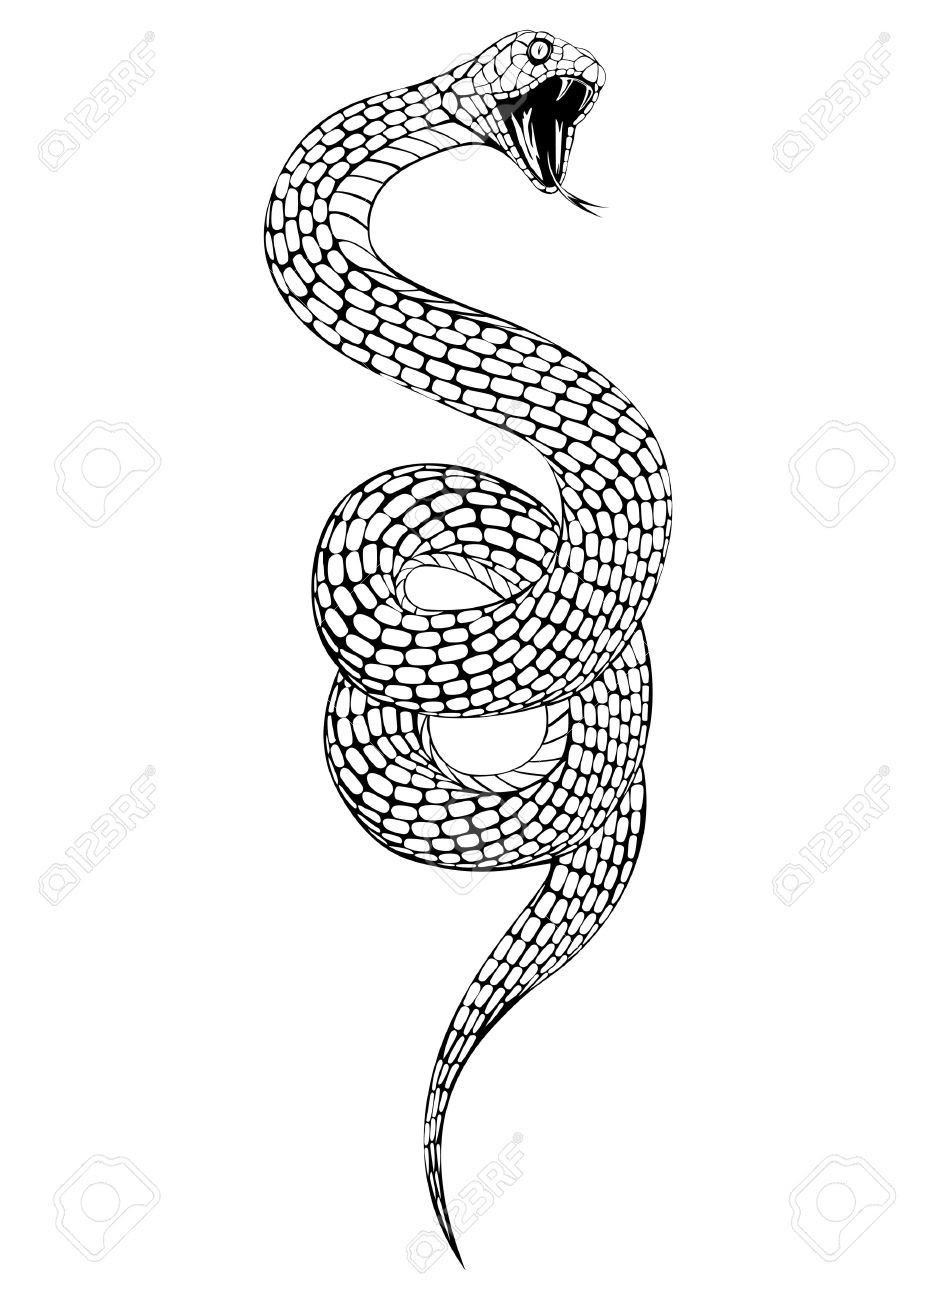 あなたのためのイラスト 新鮮なリアル 蛇 イラスト 白黒